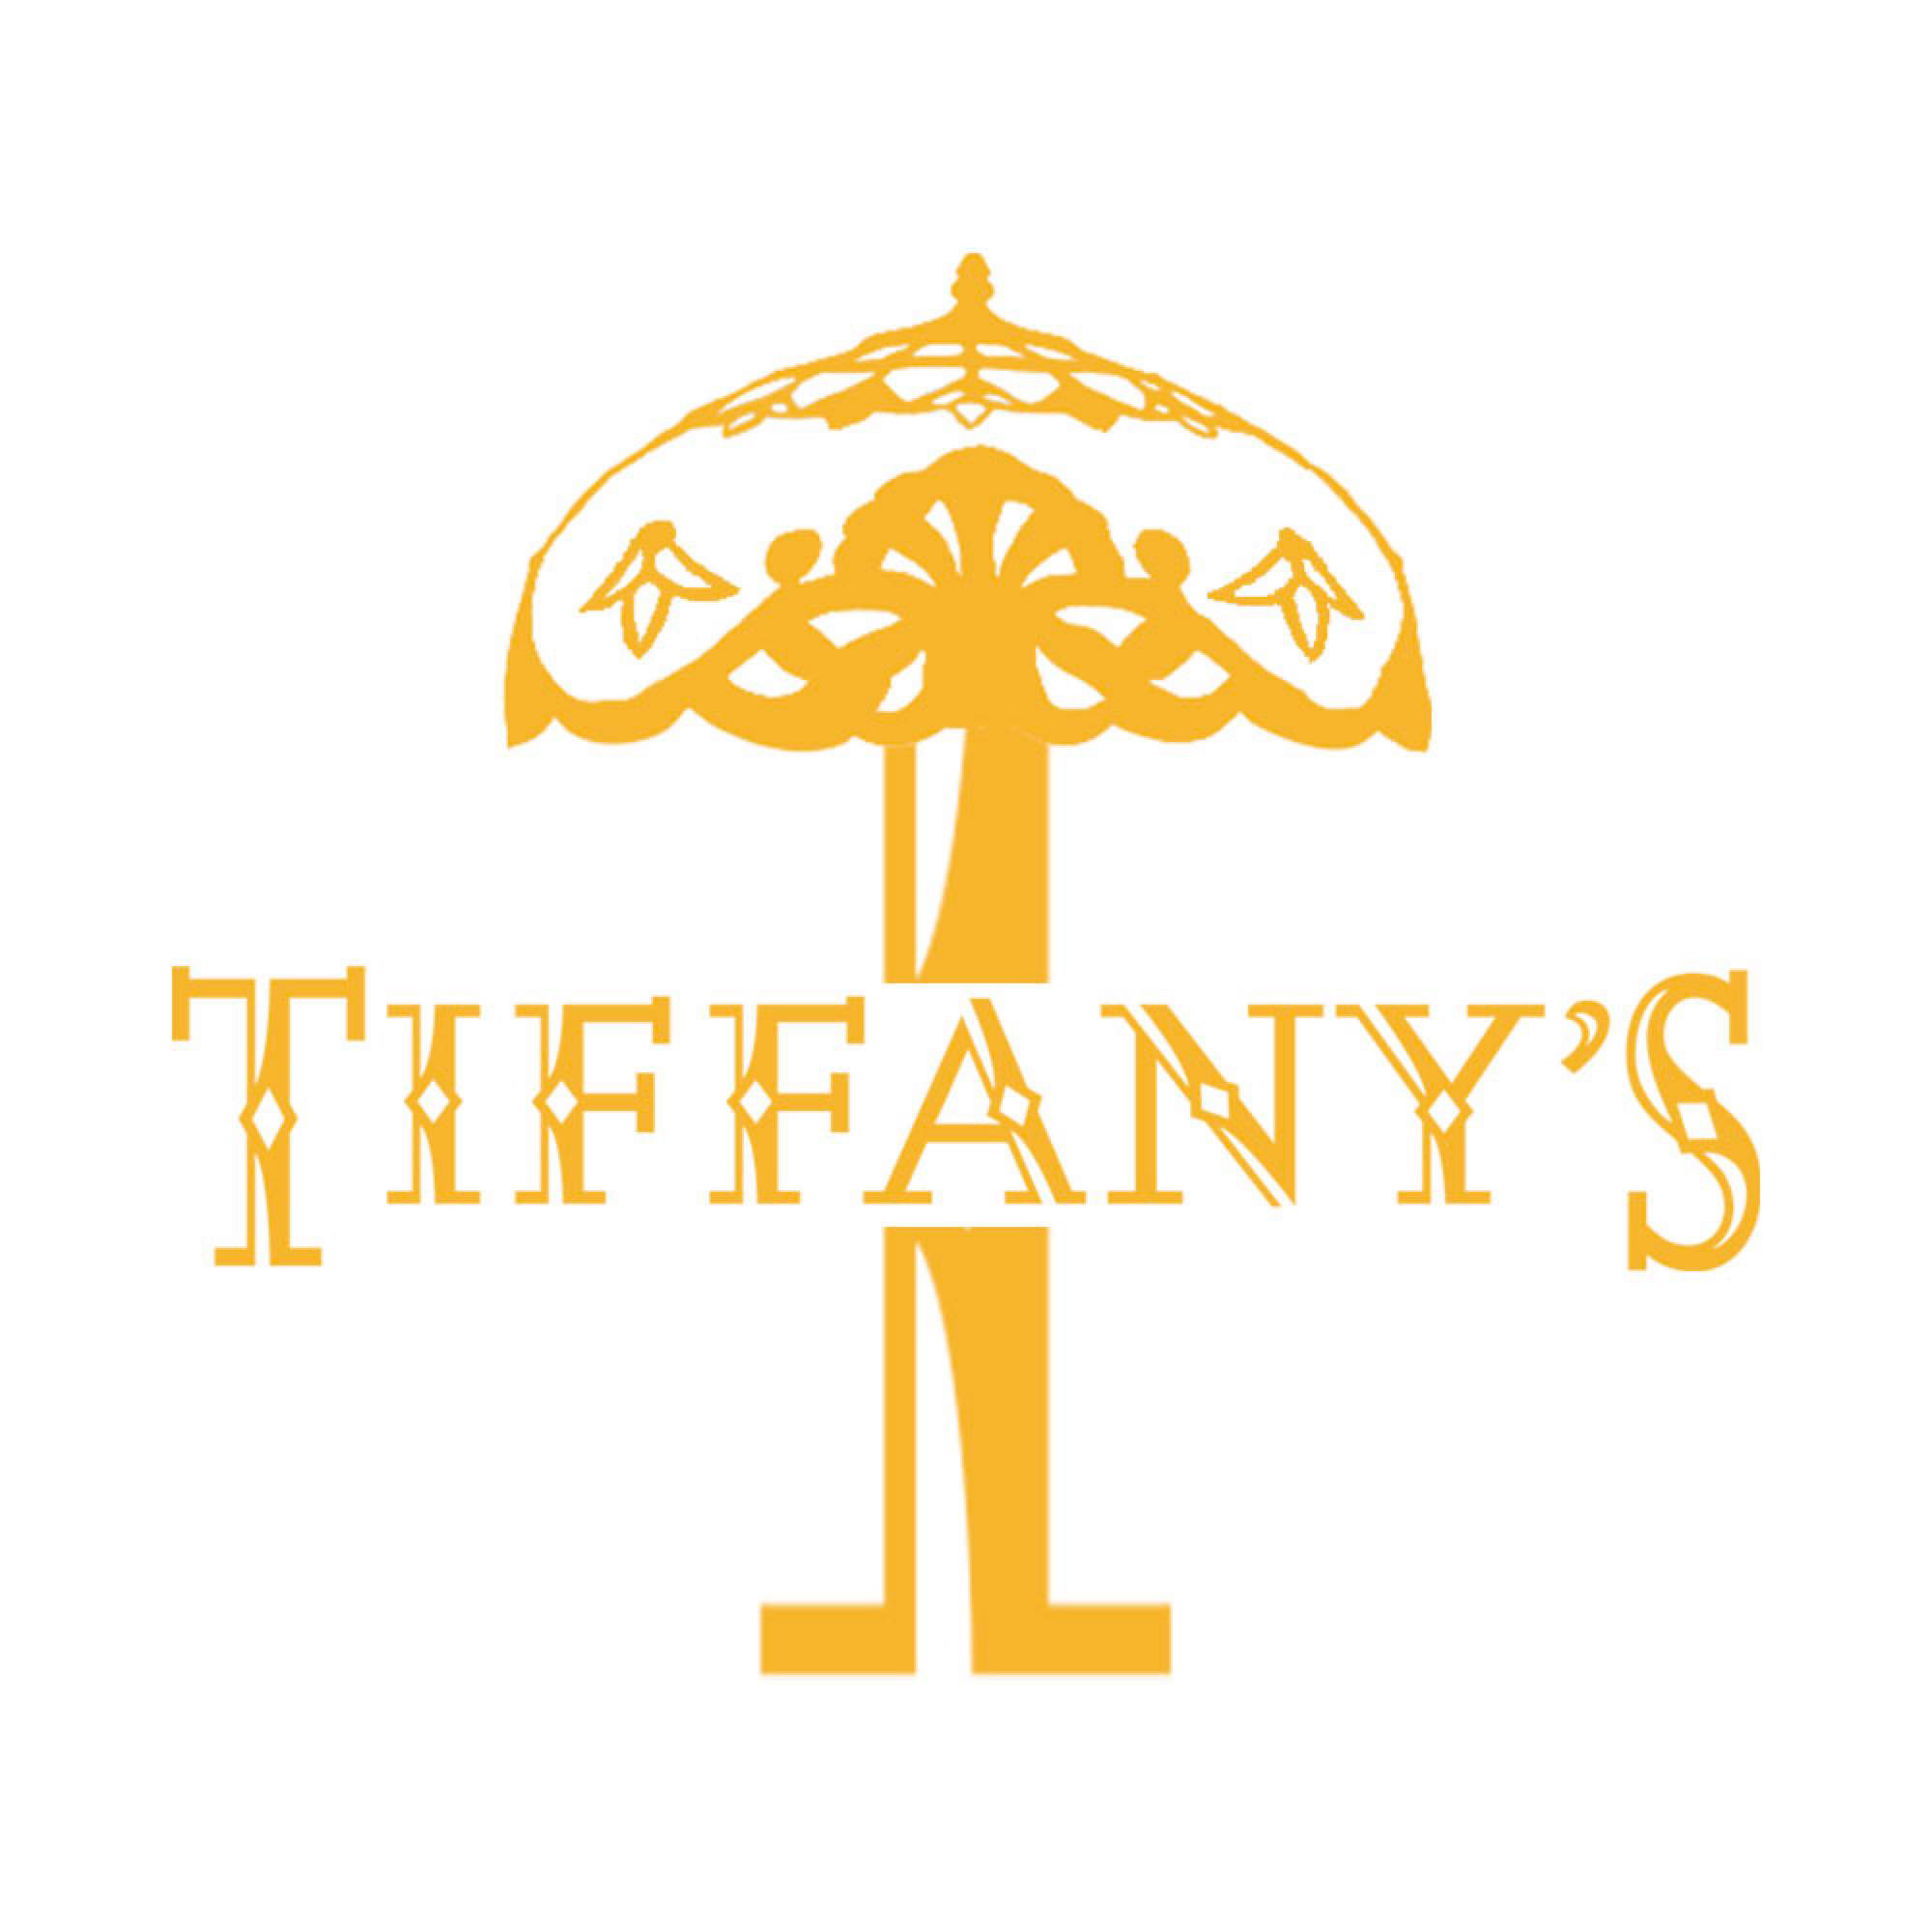 Tiffany's bar